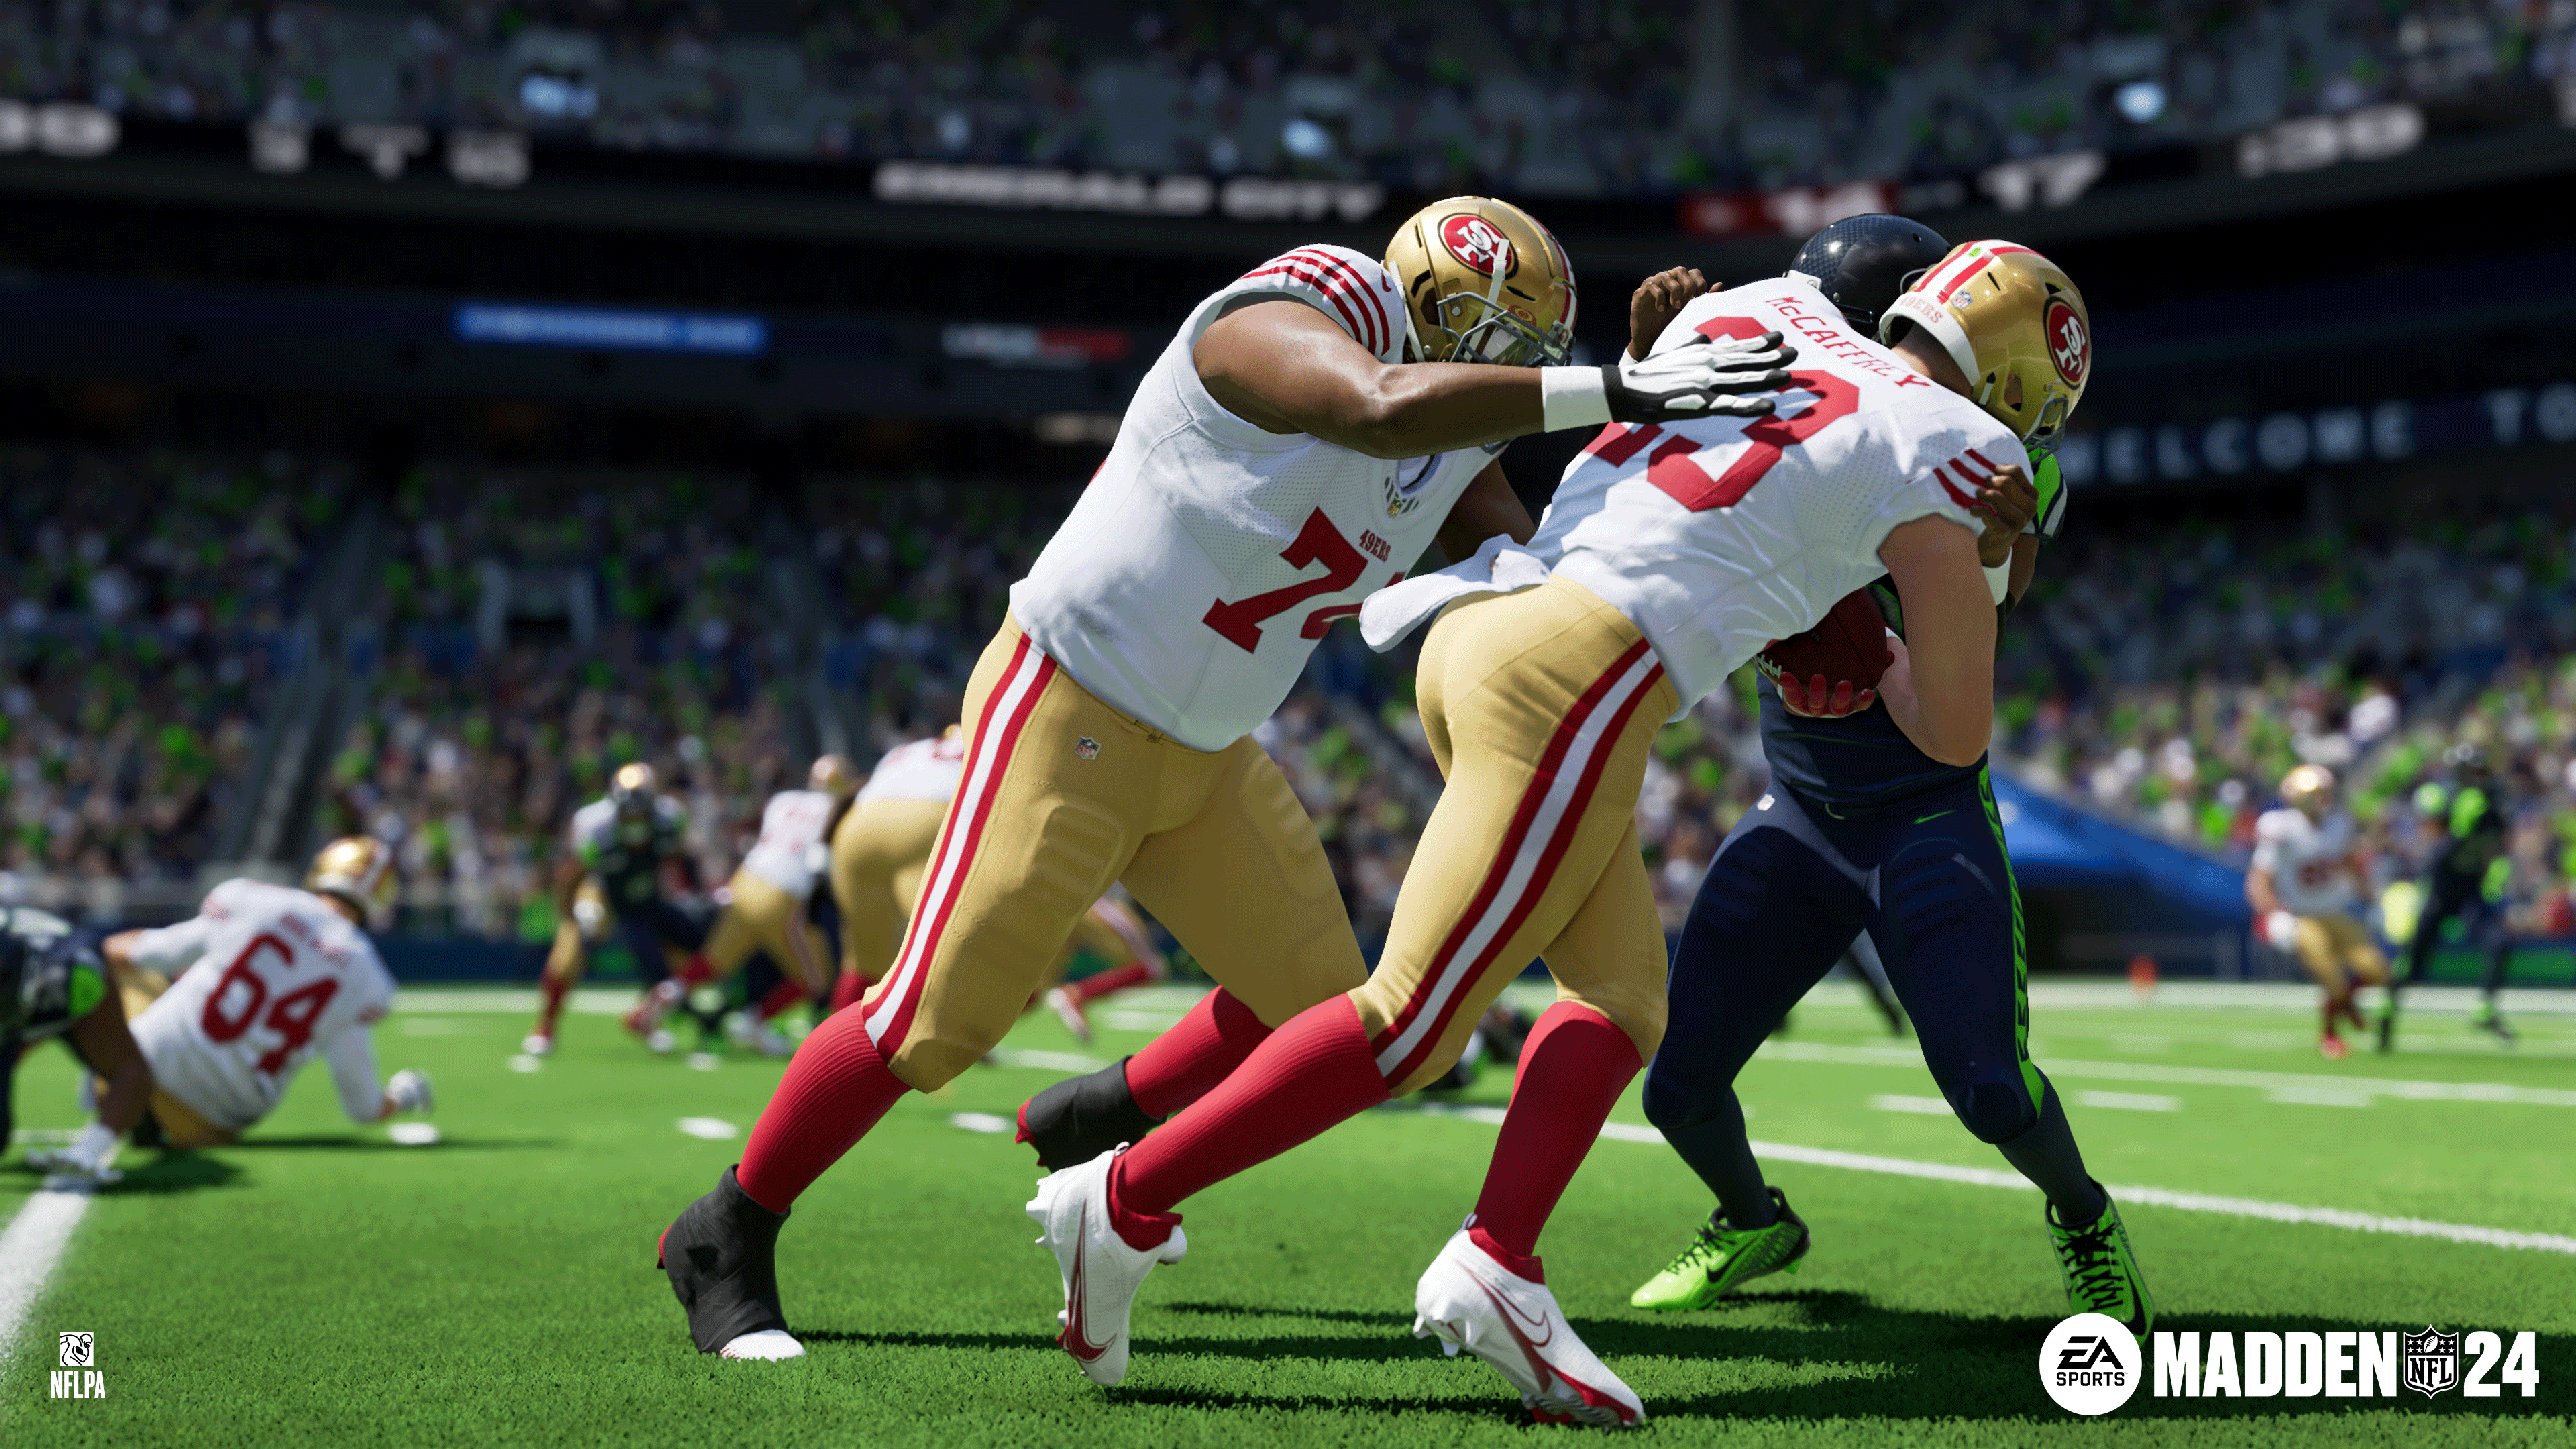 EA opublikowało zwiastun gry Madden NFL 24